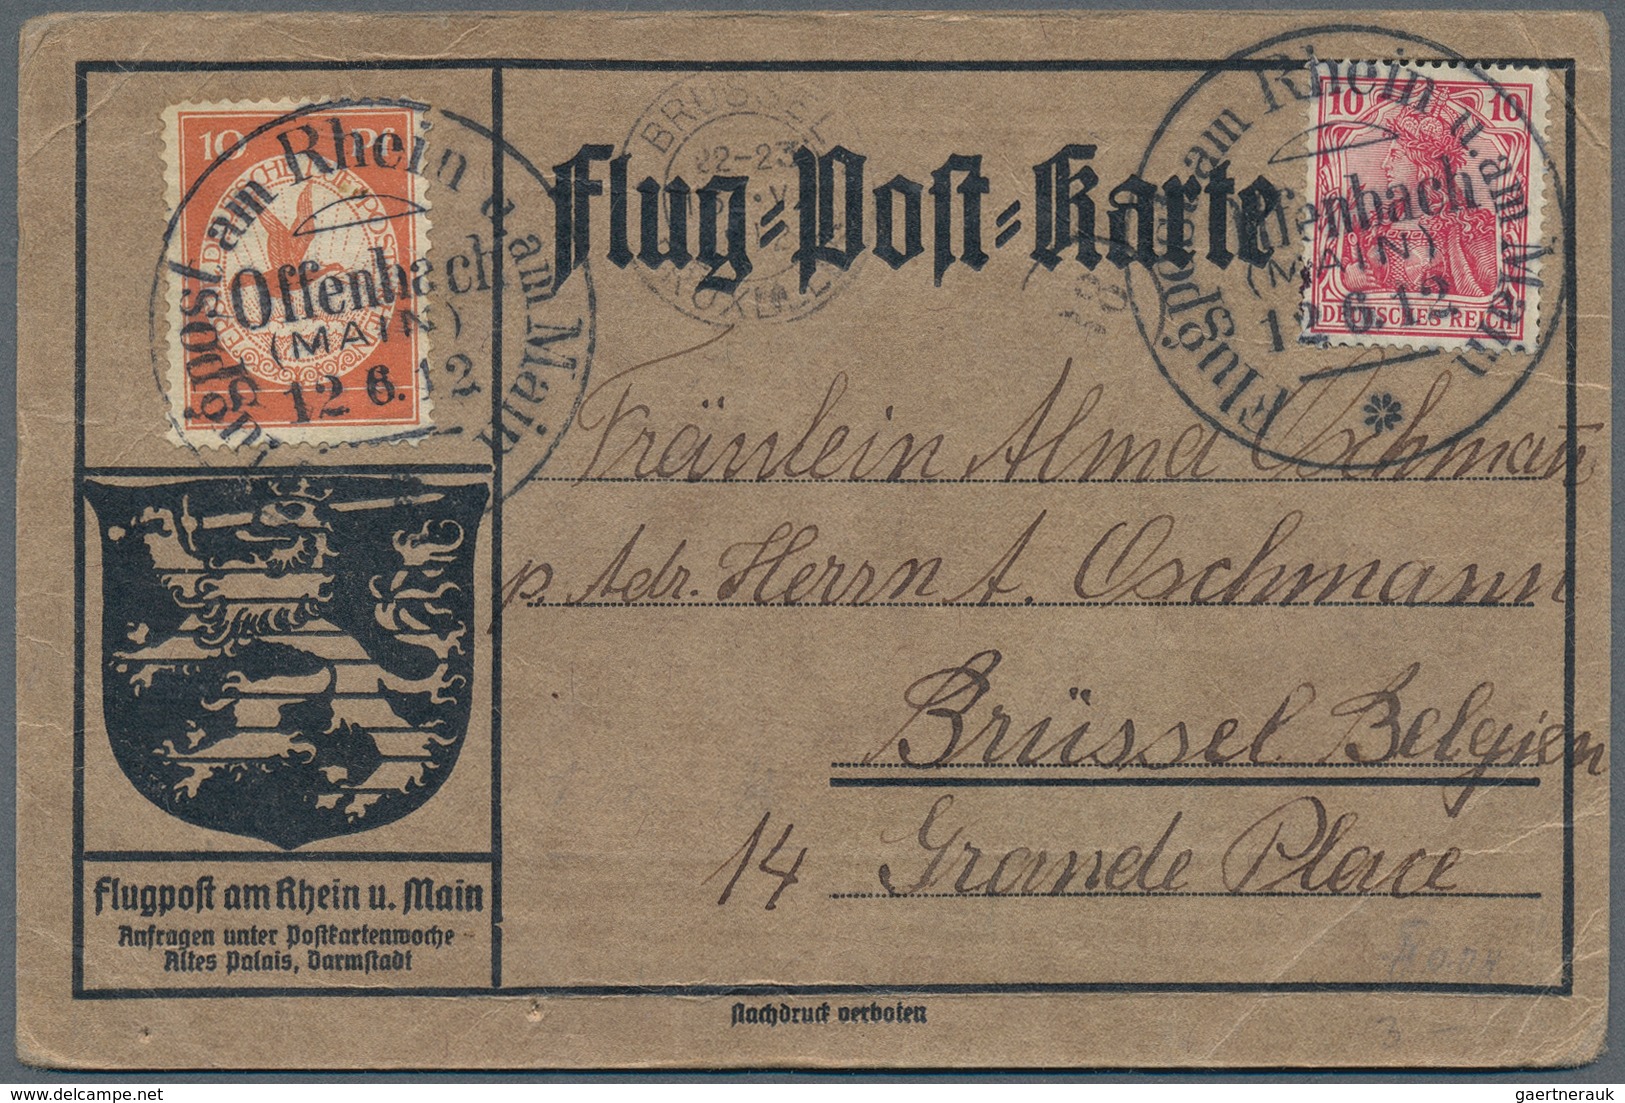 24843 Zeppelinpost Deutschland: 1912, umfangreiche Sammlung "Flugpost Rhein/Main" mit ca. 135 Karten mit d